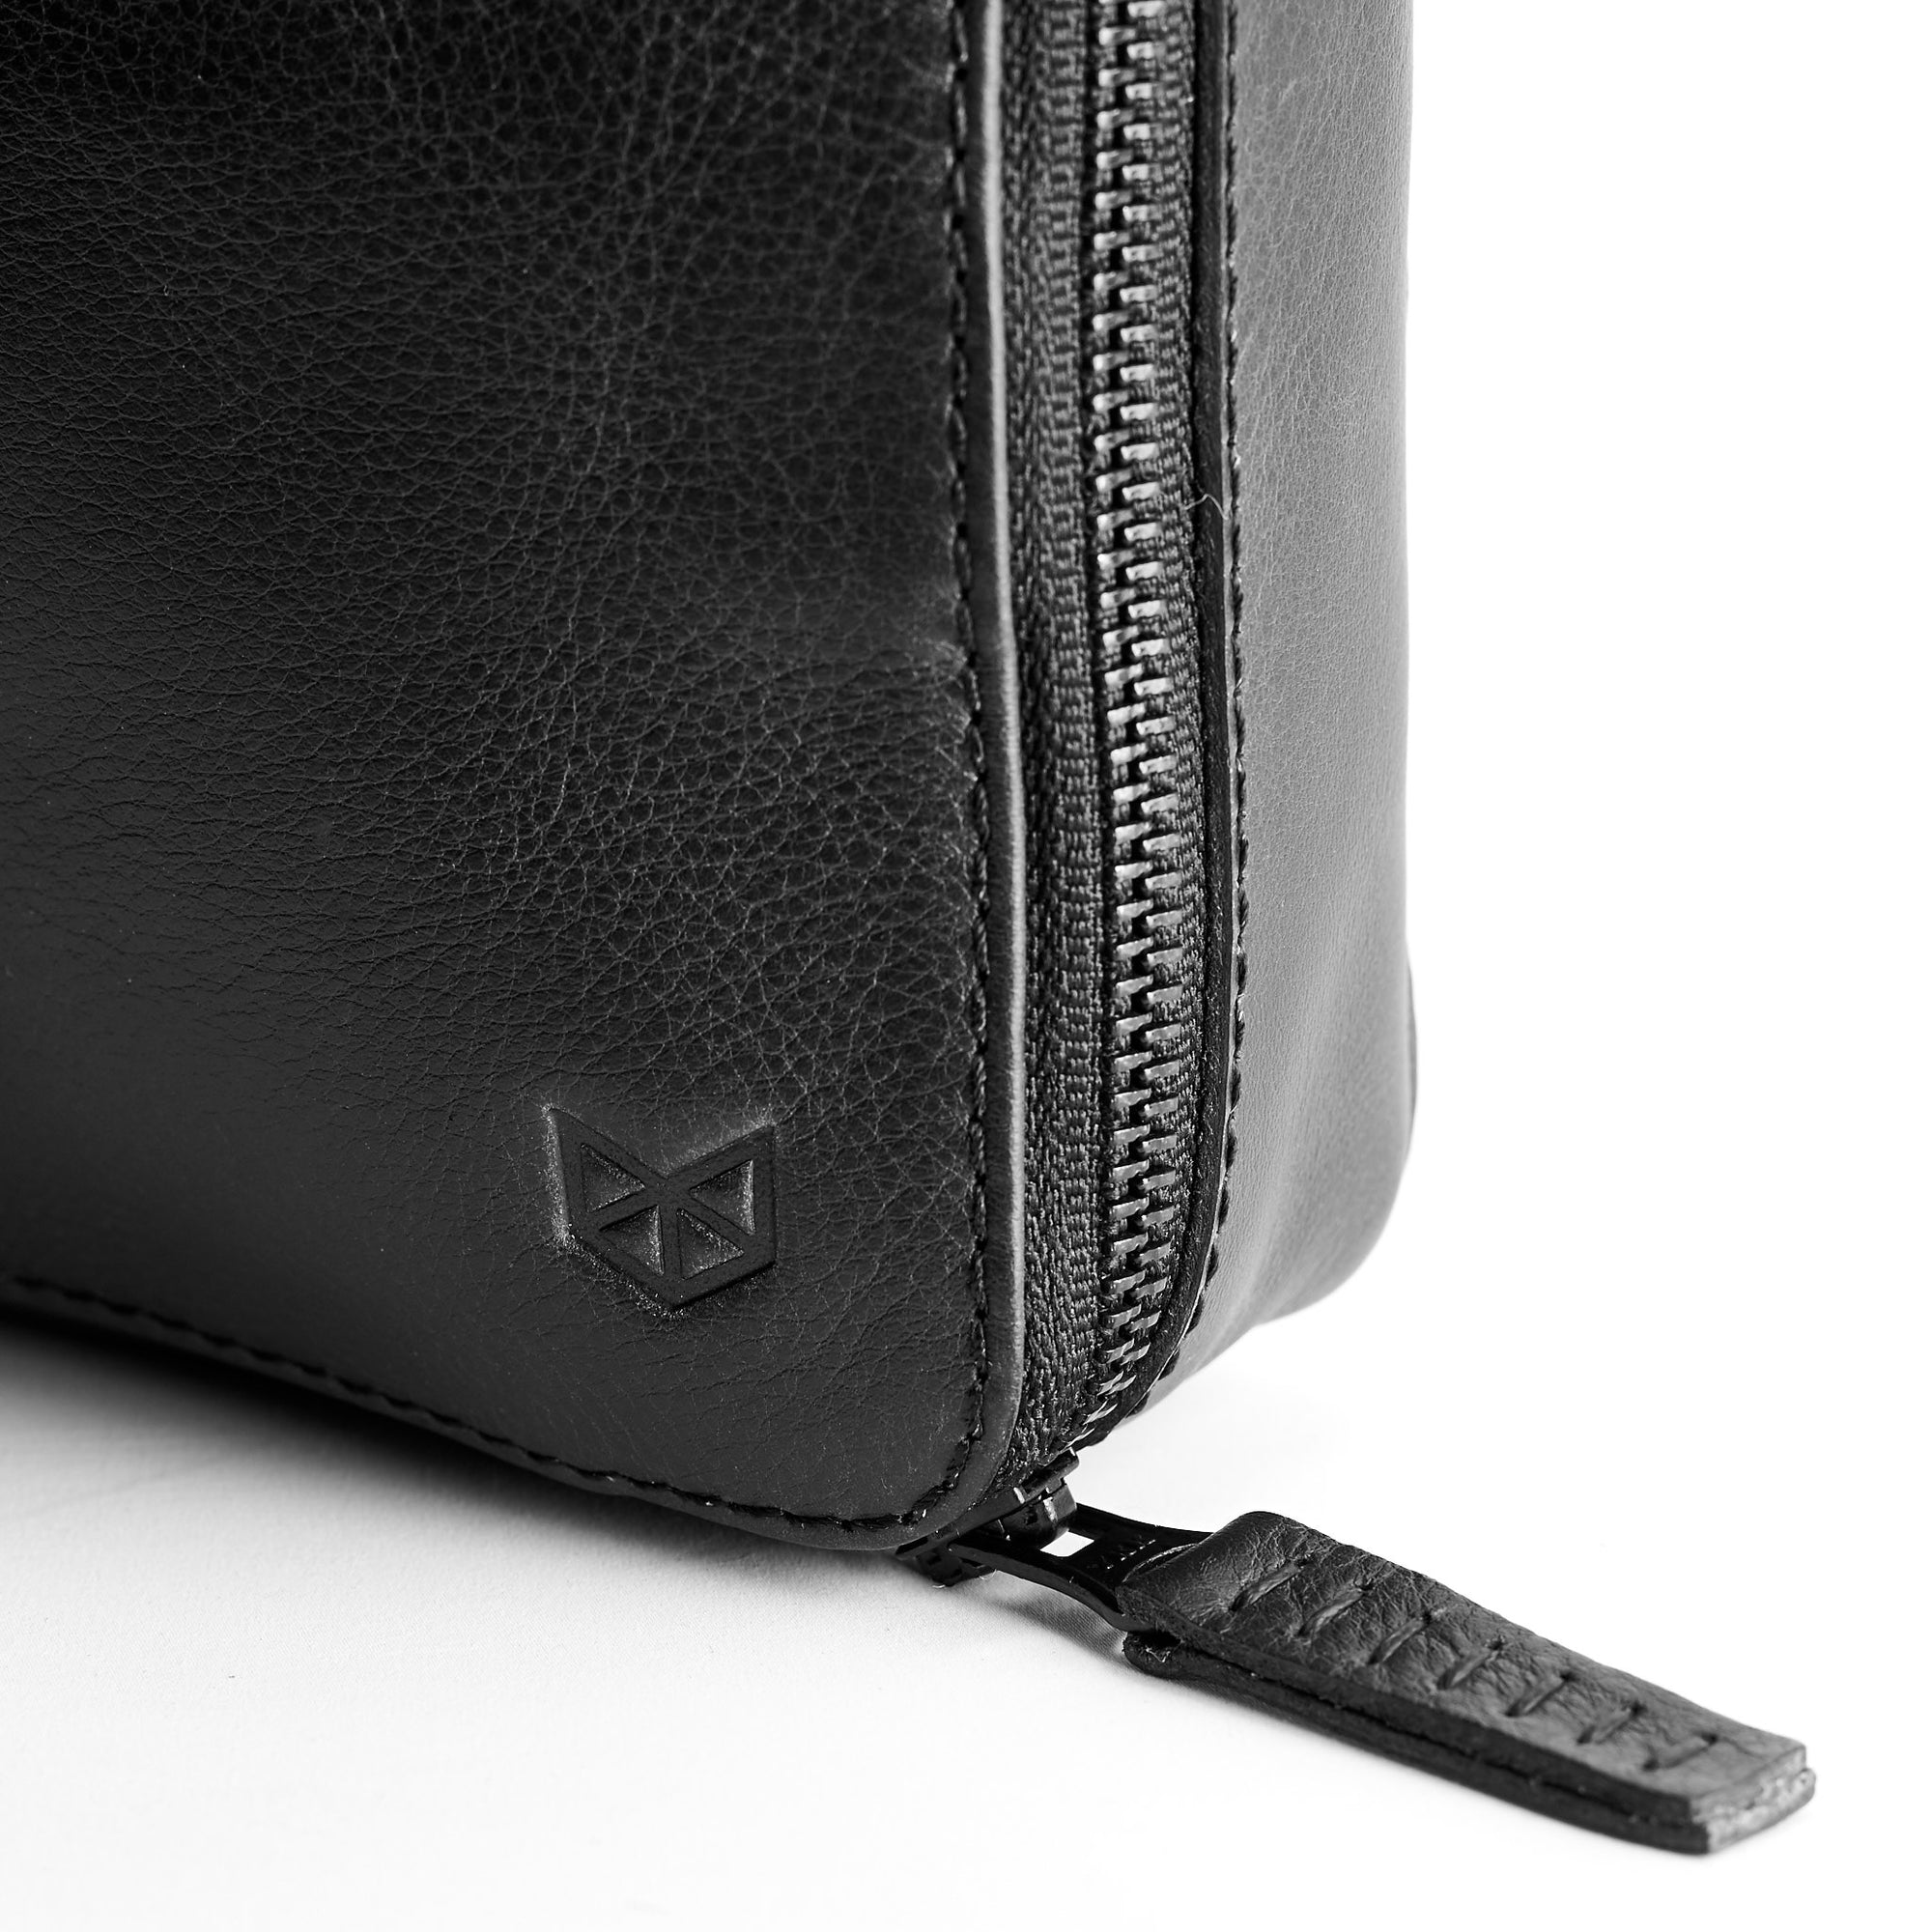 Metallic YKK zippers. Black EDC laptop bag. Tech gear bag by Capra Leather.